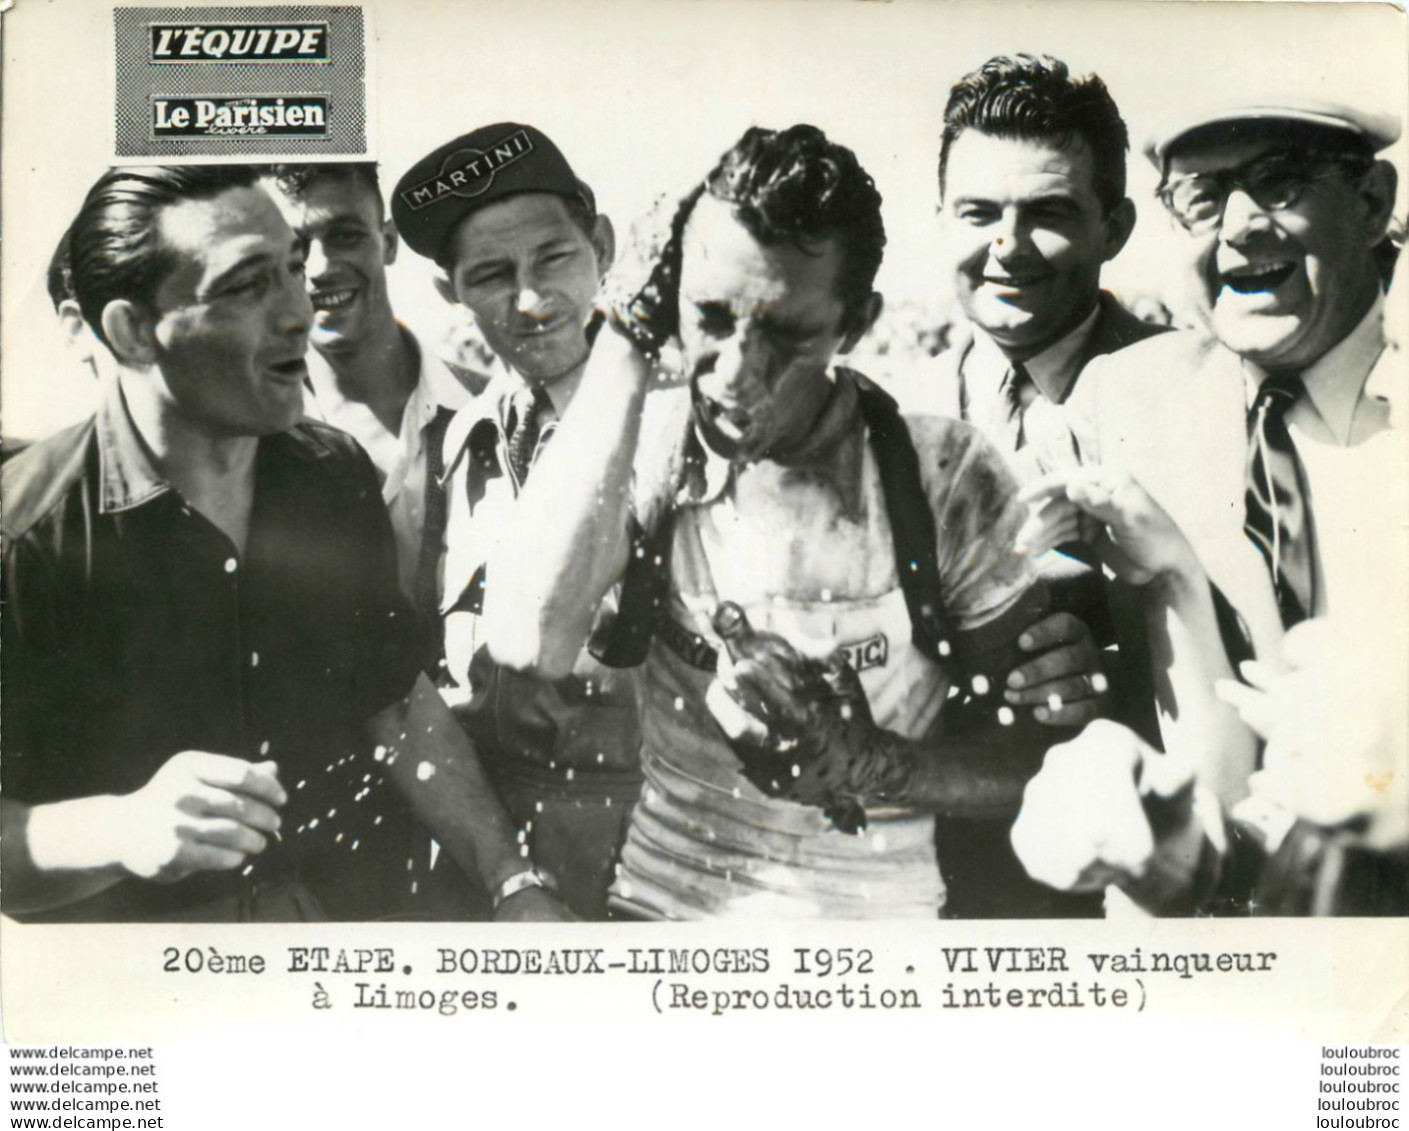 TOUR DE FRANCE 1952 VIVIER VAINQUEUR A LIMOGES 20èm ETAPE PHOTO PRESSE ORIGINALE ARGENTIQUE  20X15CM EQUIPE  LE PARISIEN - Sporten